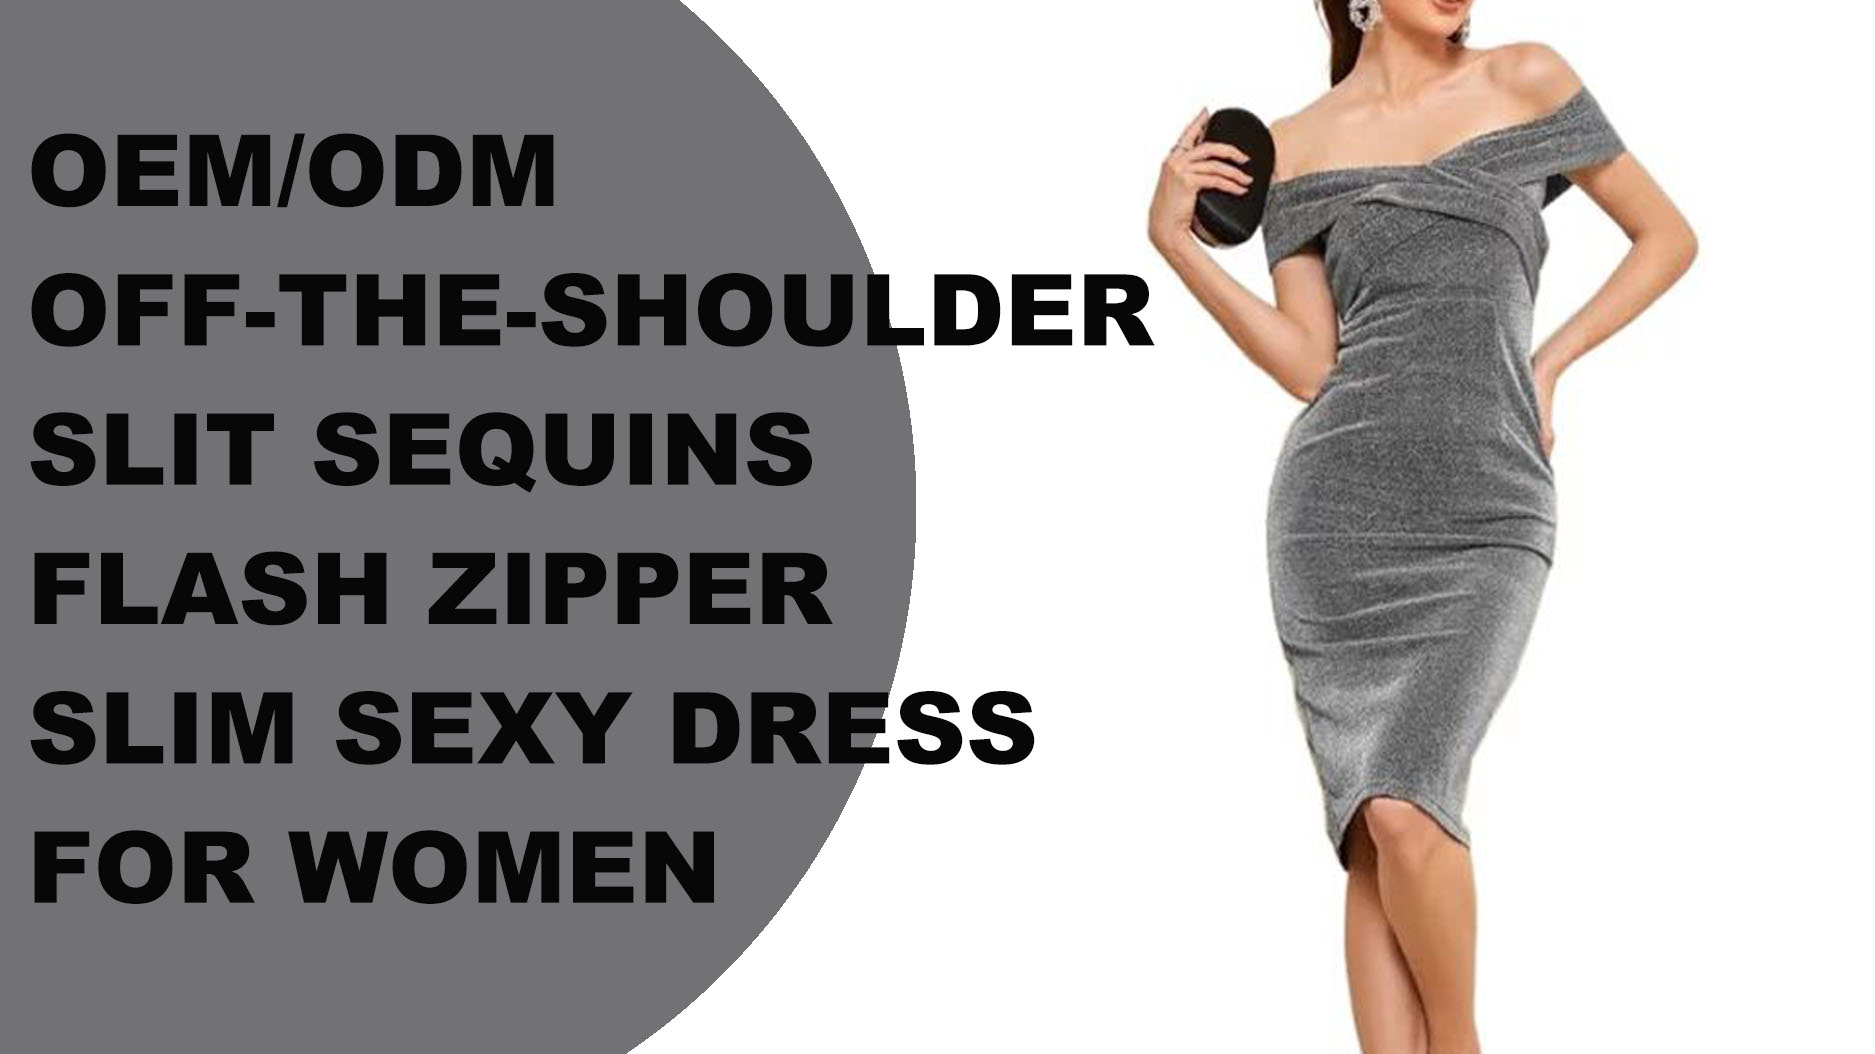 OEM/ODM off-the-shoulder slit sequins flash zipper slim sexy dress for women